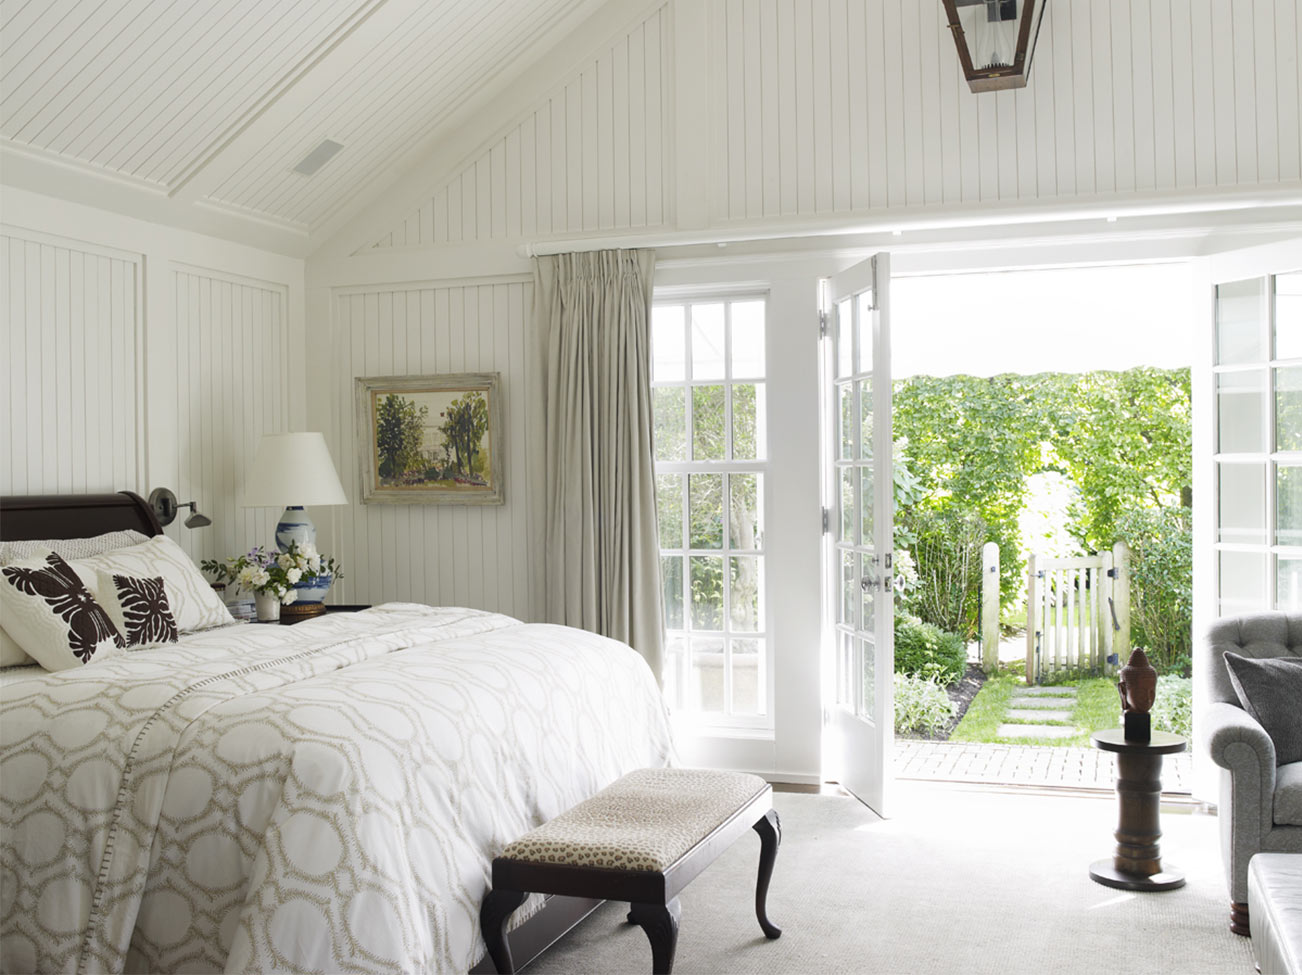 Chambre à coucher en planches à baguette blanches, literie raffinée et banc au pied du lit, fauteuil gris et portes-fenêtres qui ouvrent sur un jardin.